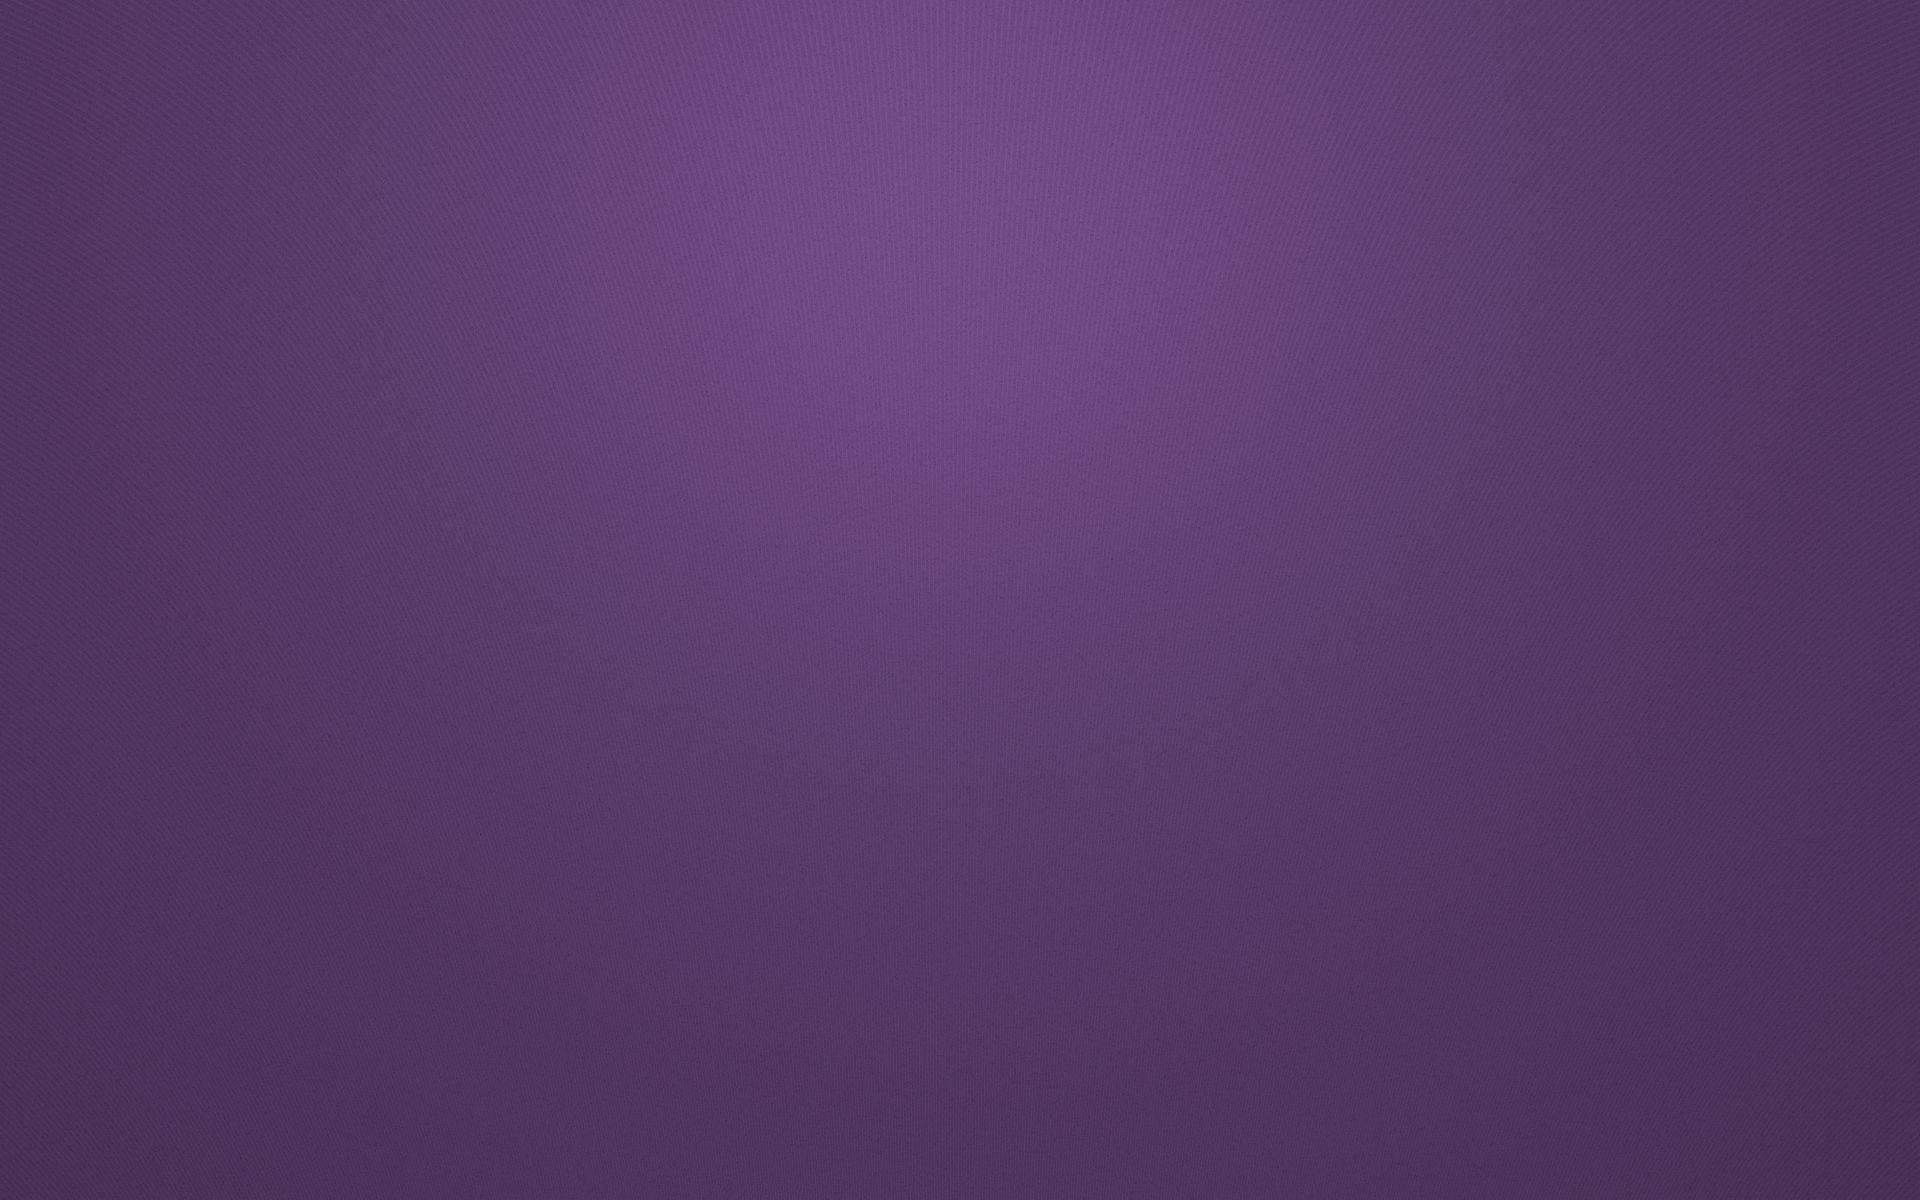 Purple Plain Wallpaper  Widescreen HD Wallpapers  Dark purple background  Purple flowers wallpaper Purple wallpaper hd